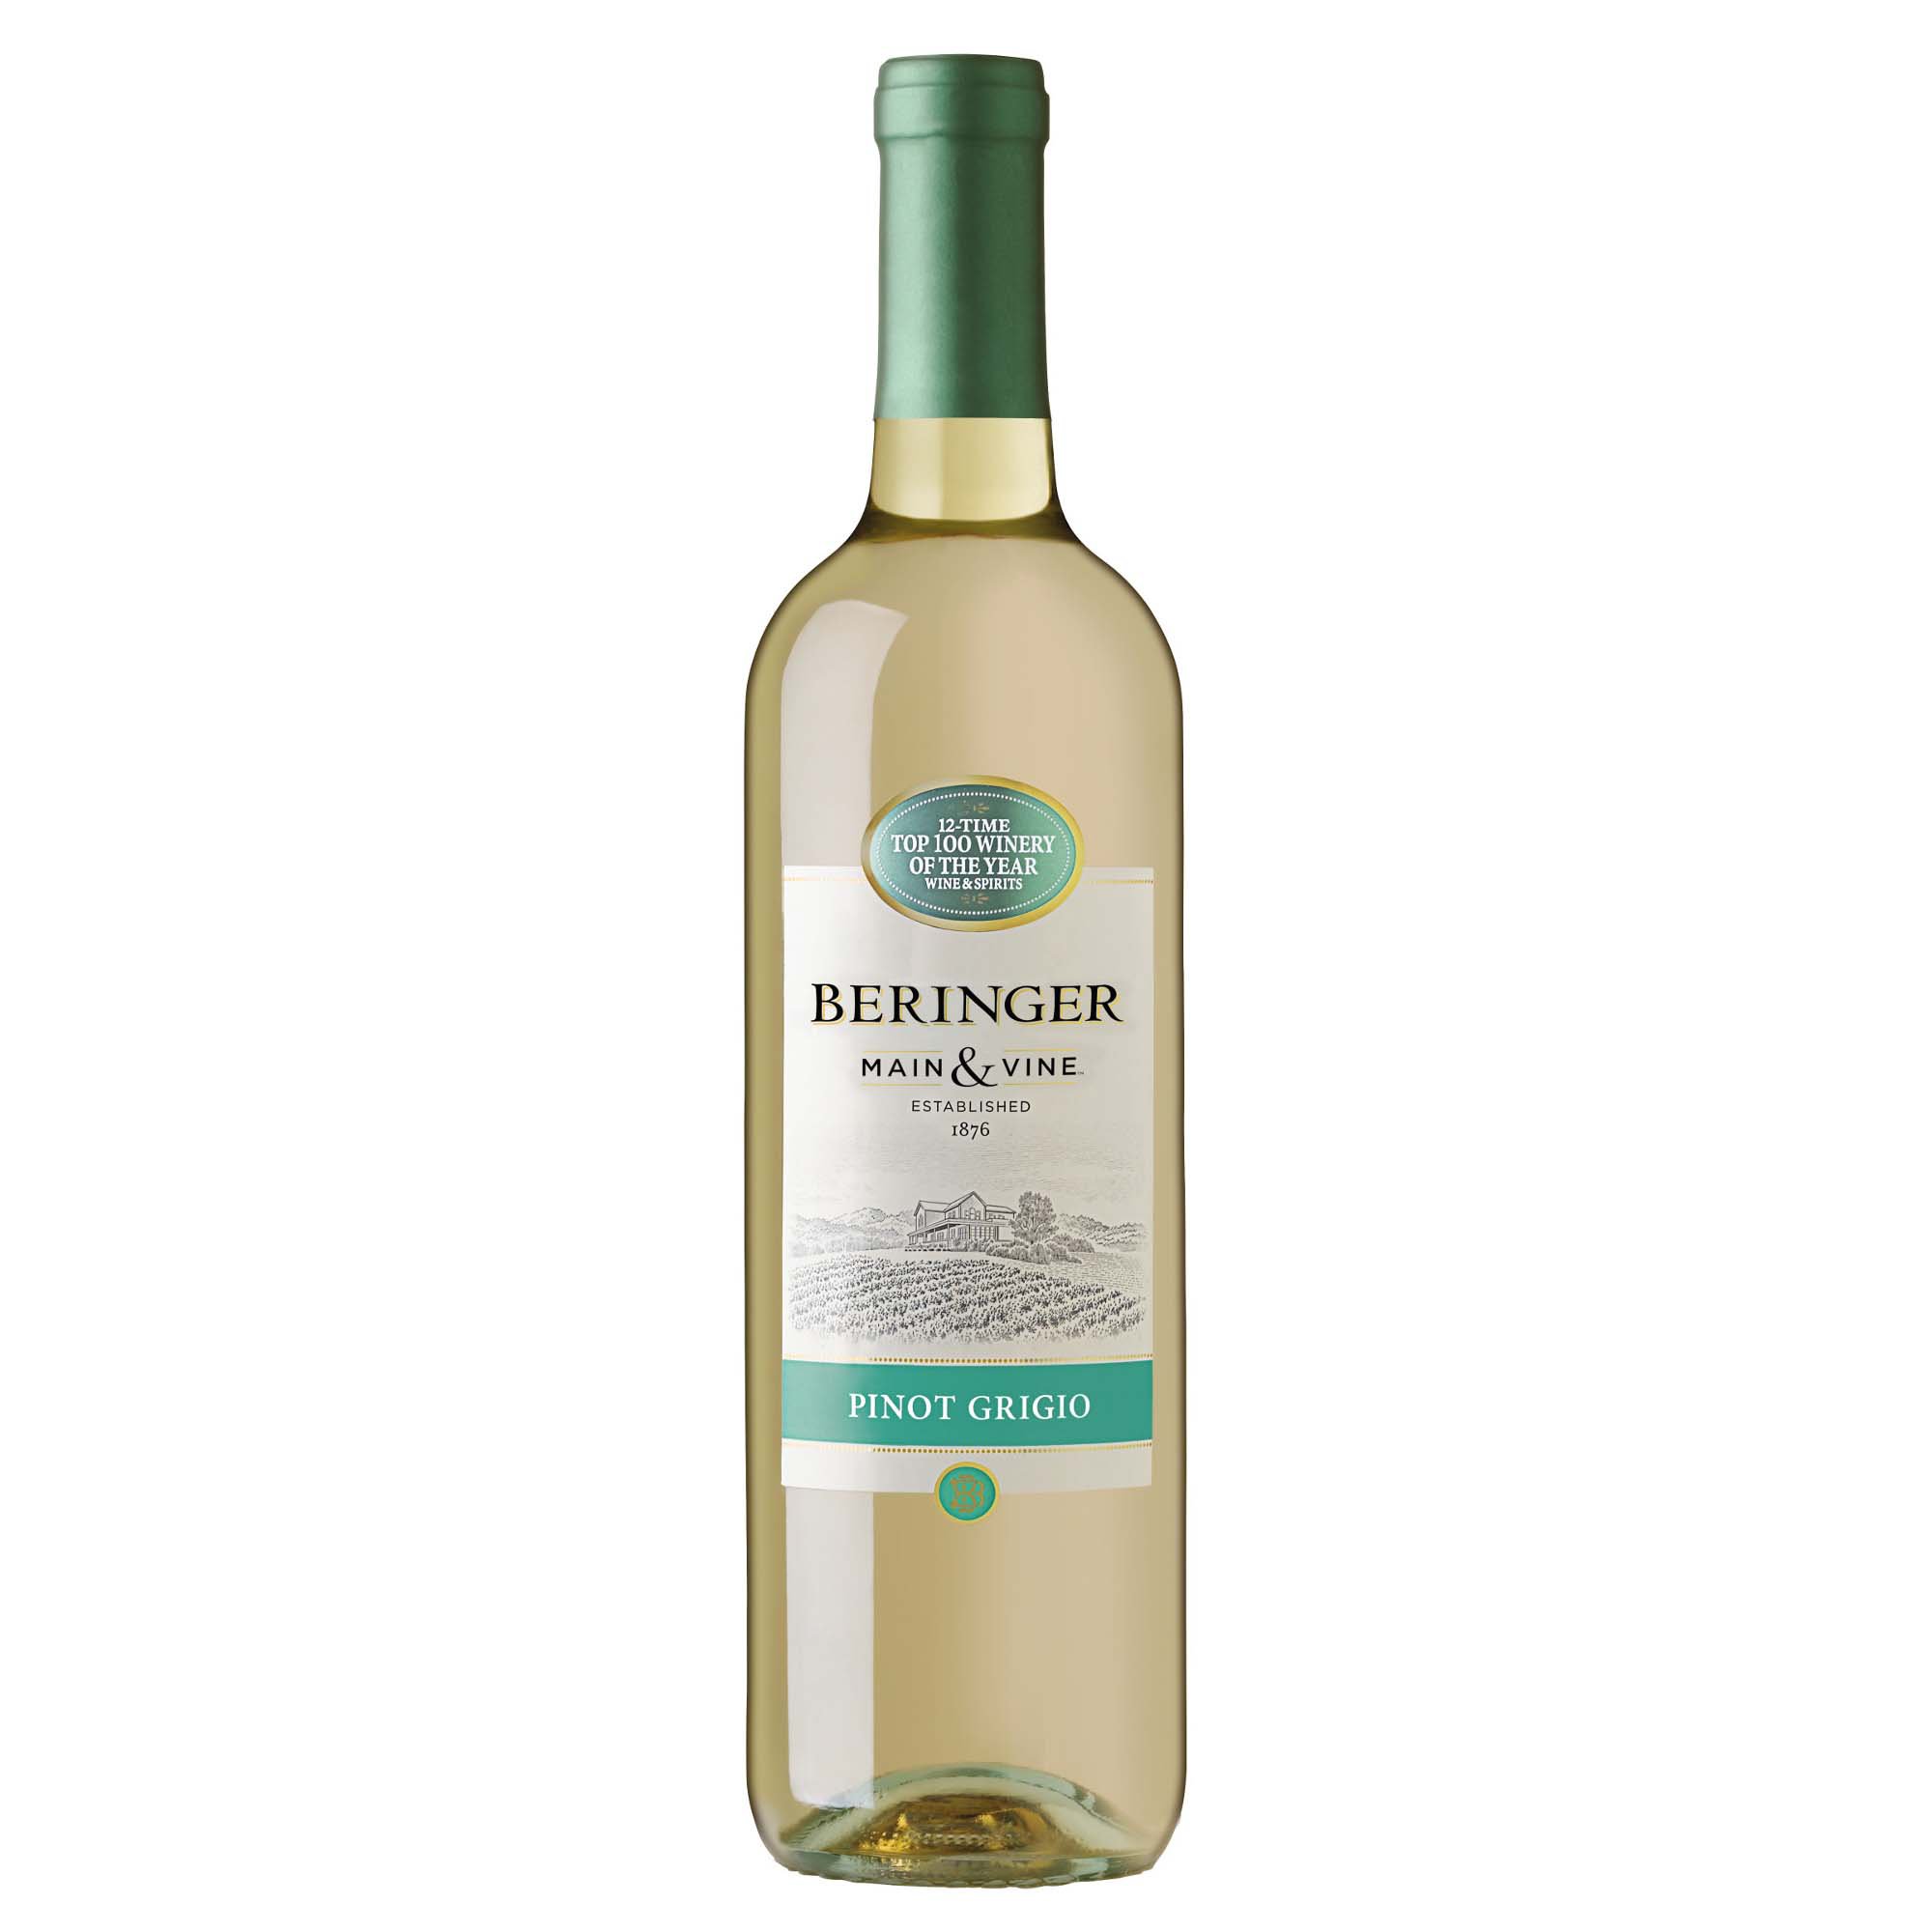 images/wine/WHITE WINE/Beringer Pinot Grigio 750ml.jpg